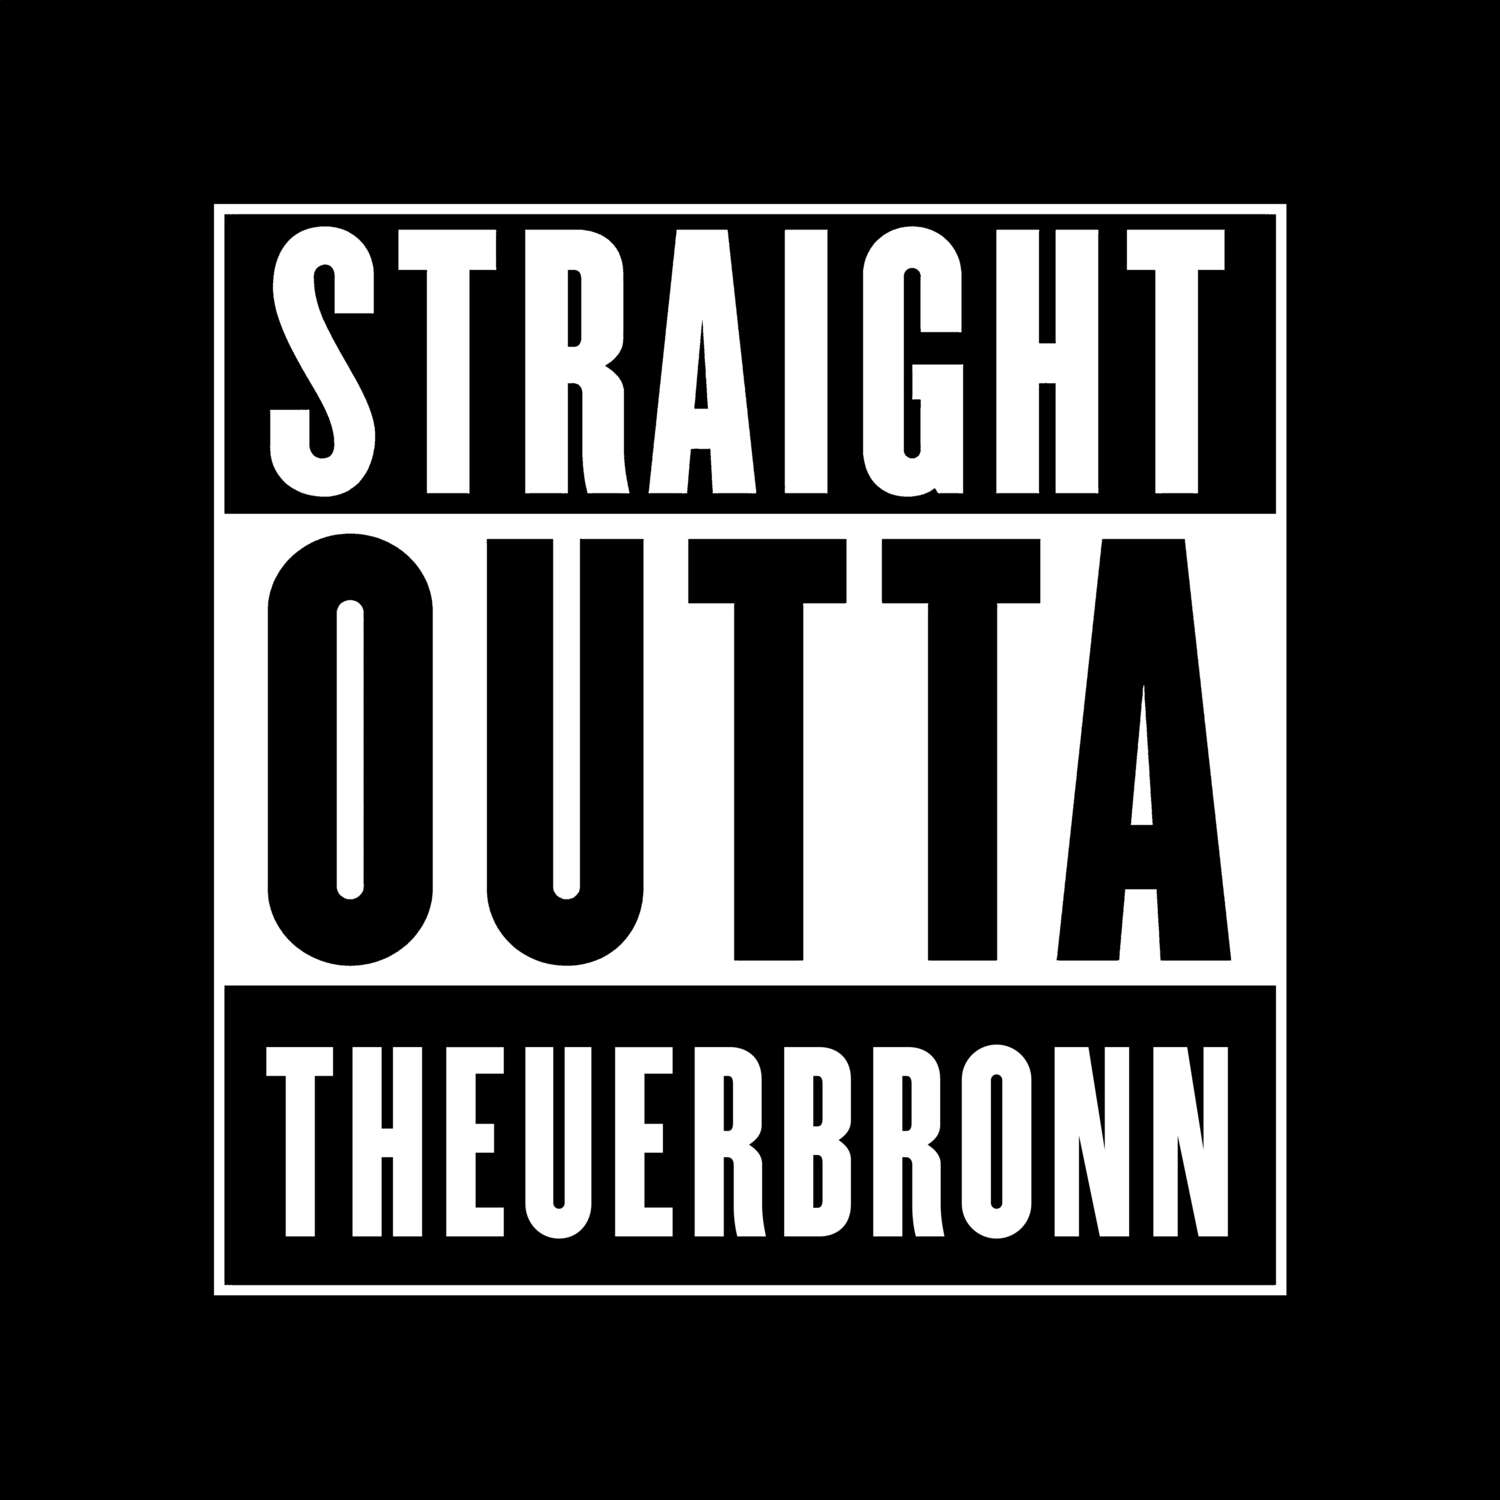 Theuerbronn T-Shirt »Straight Outta«